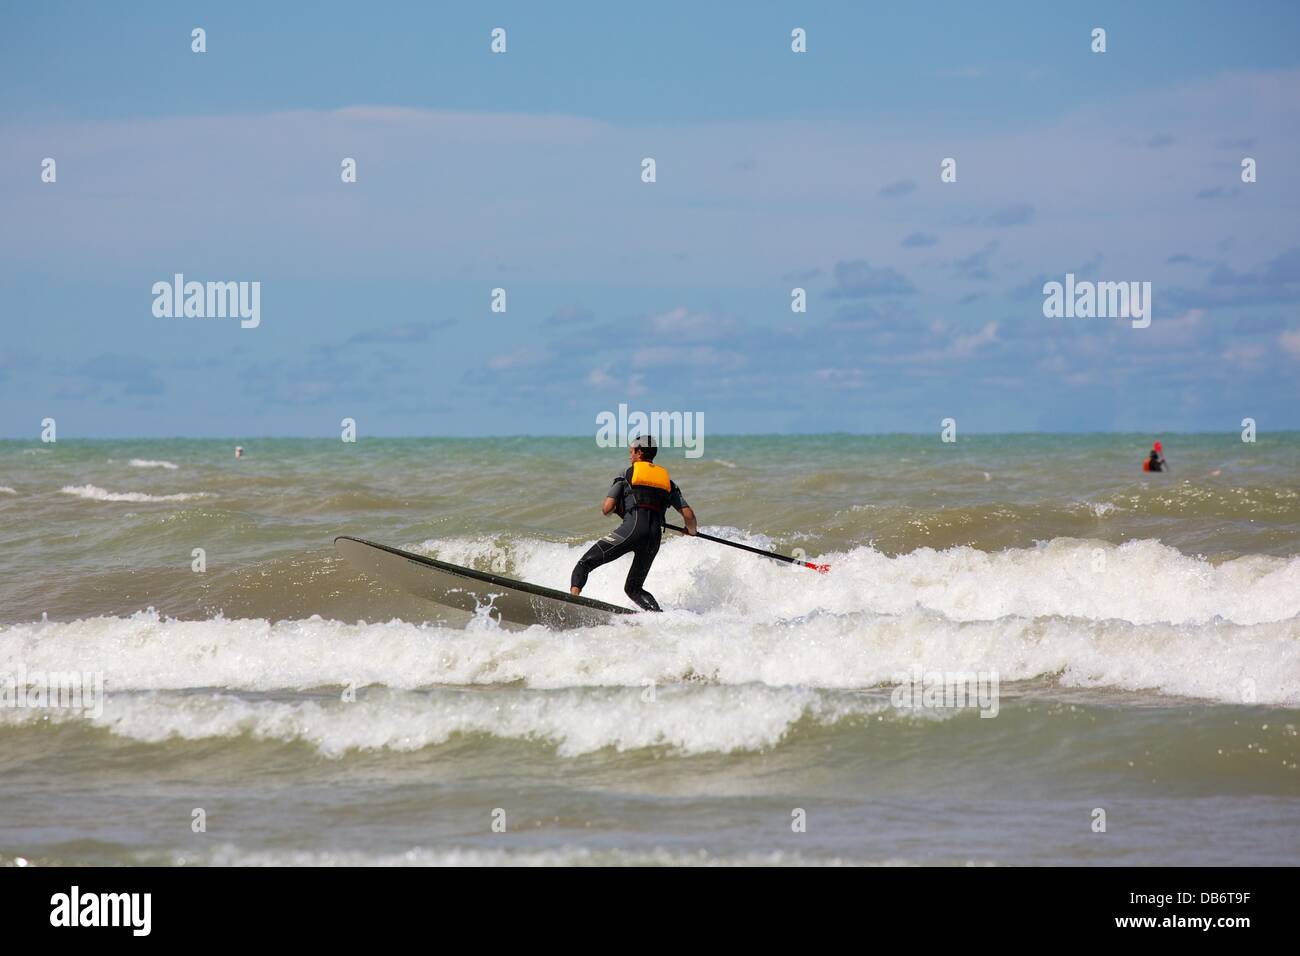 Chicago, Illinois, USA. 24 août, 2013. Un homme debout sur un paddle board  surfe sur une vague à la plage de Montrose. Un vent du nord soufflant  pendant deux jours a été